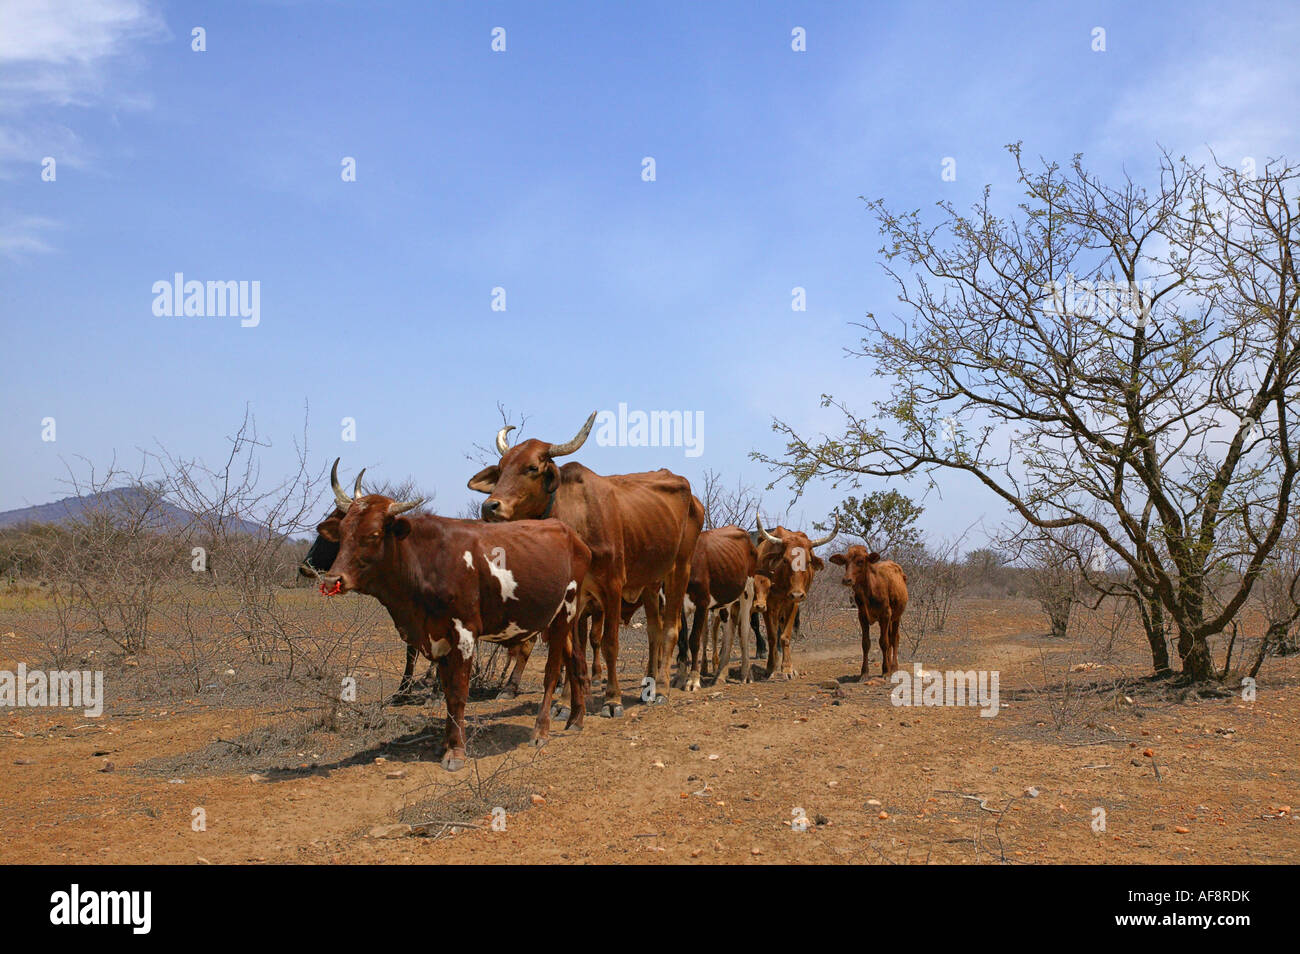 Un troupeau de bovins légers avec leur hanche et côtes montrant dans une zone sans feuilles arides pendant une sécheresse dans la province du Limpopo. Banque D'Images